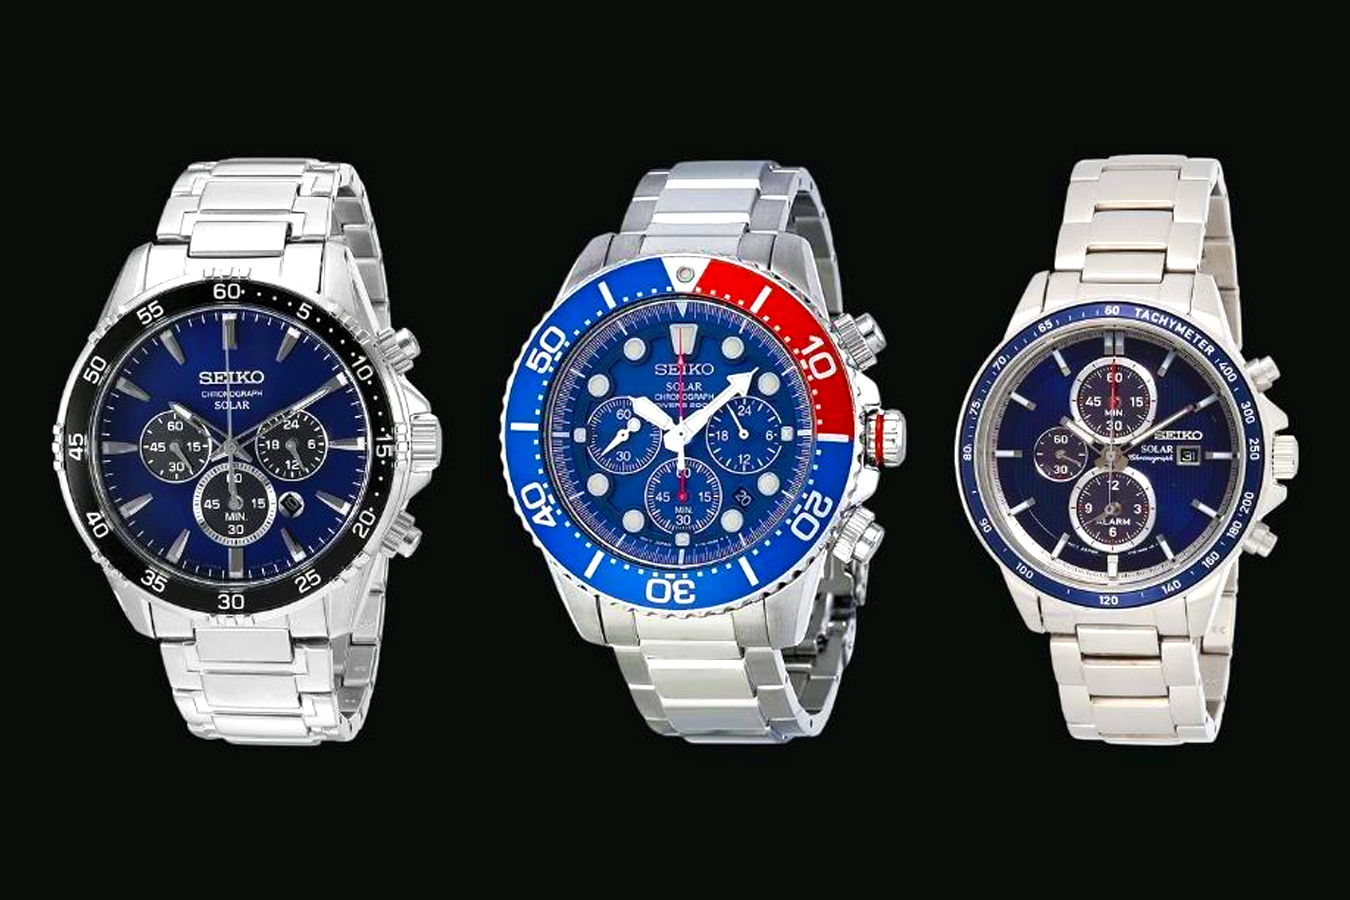 Seiko Solar Watches